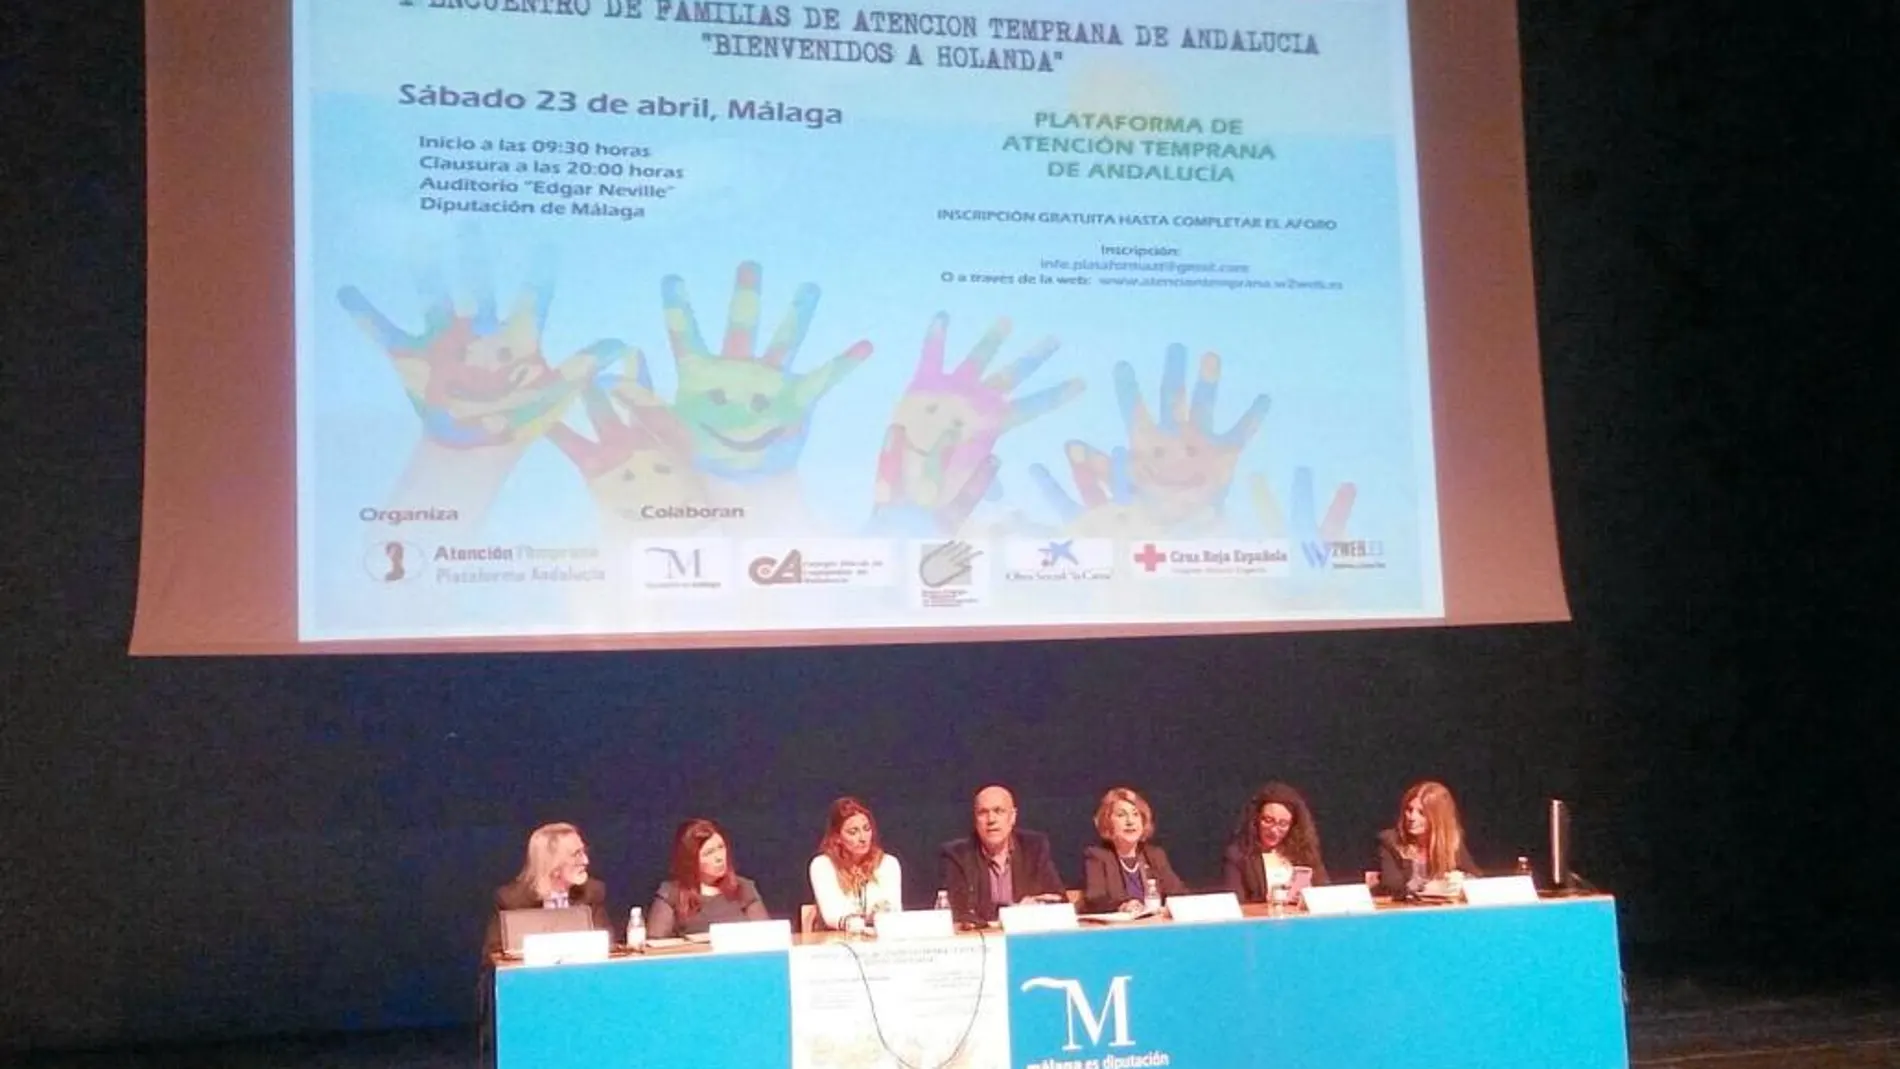 La Diputación de Málaga cedió el auditorio para la celebración del I Encuentro de Familias de Atención Temprana